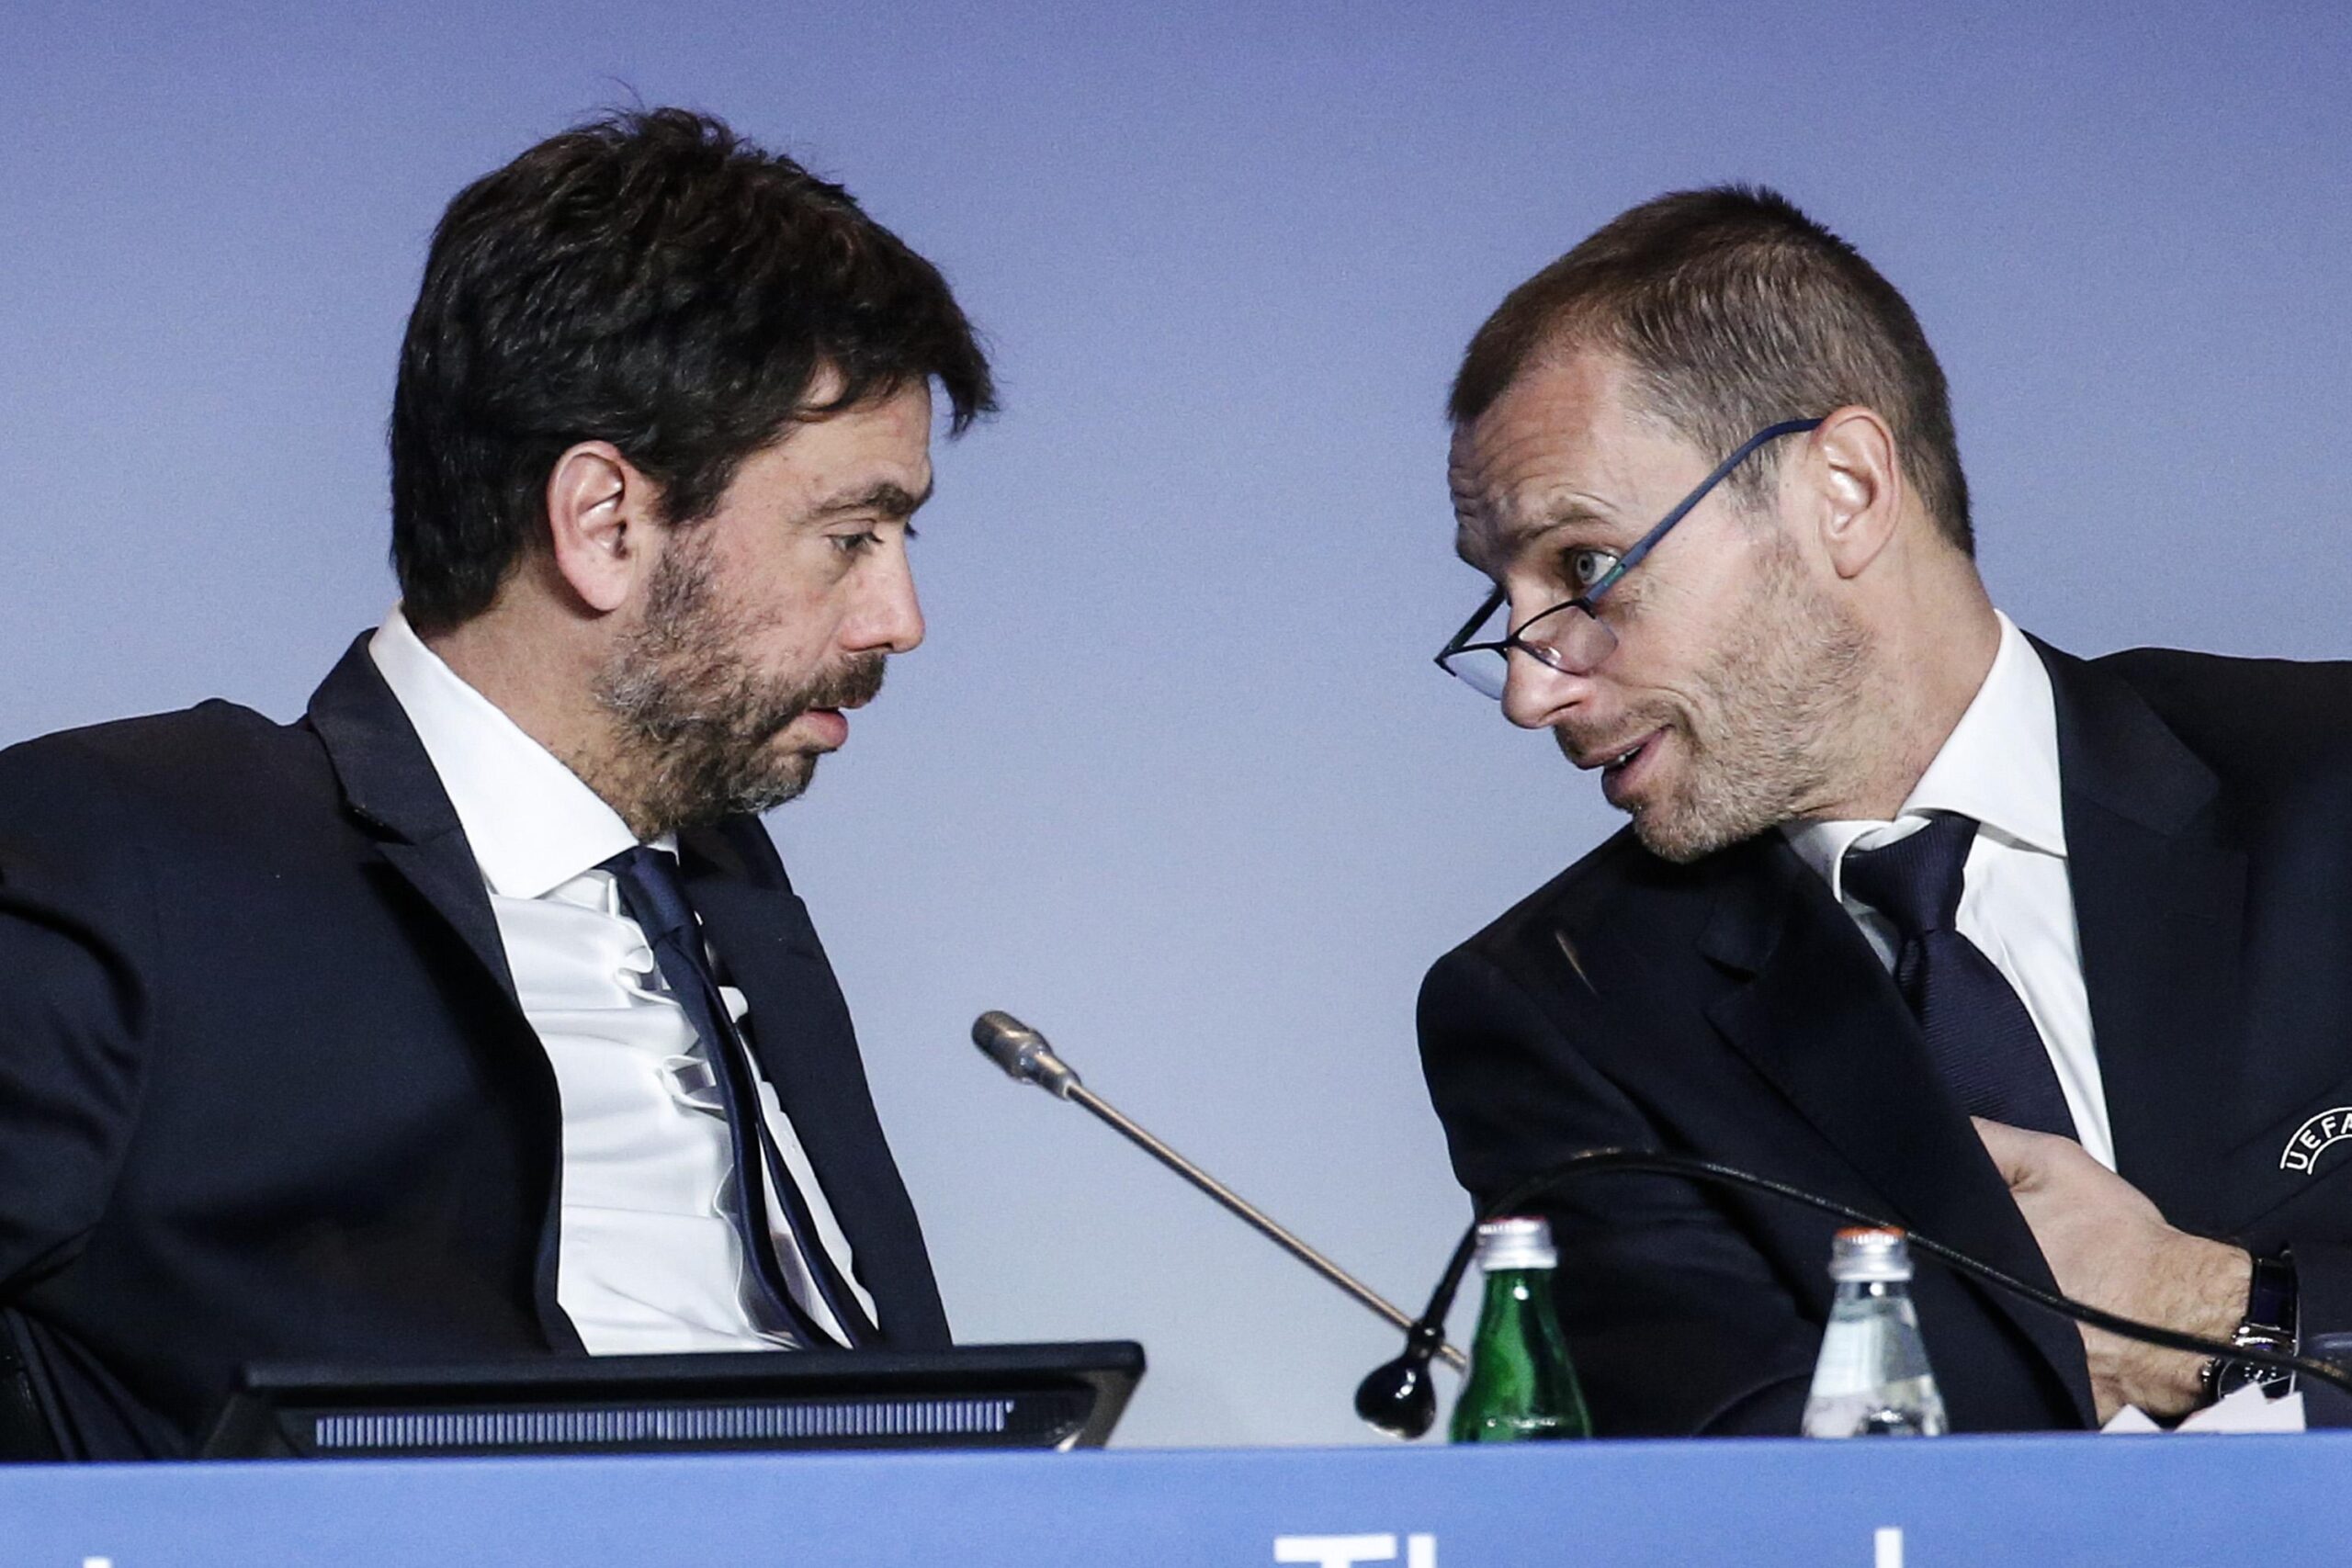 Caso Juve, si muove anche l’Uefa: aperta un’indagine per possibili violazioni finanziarie